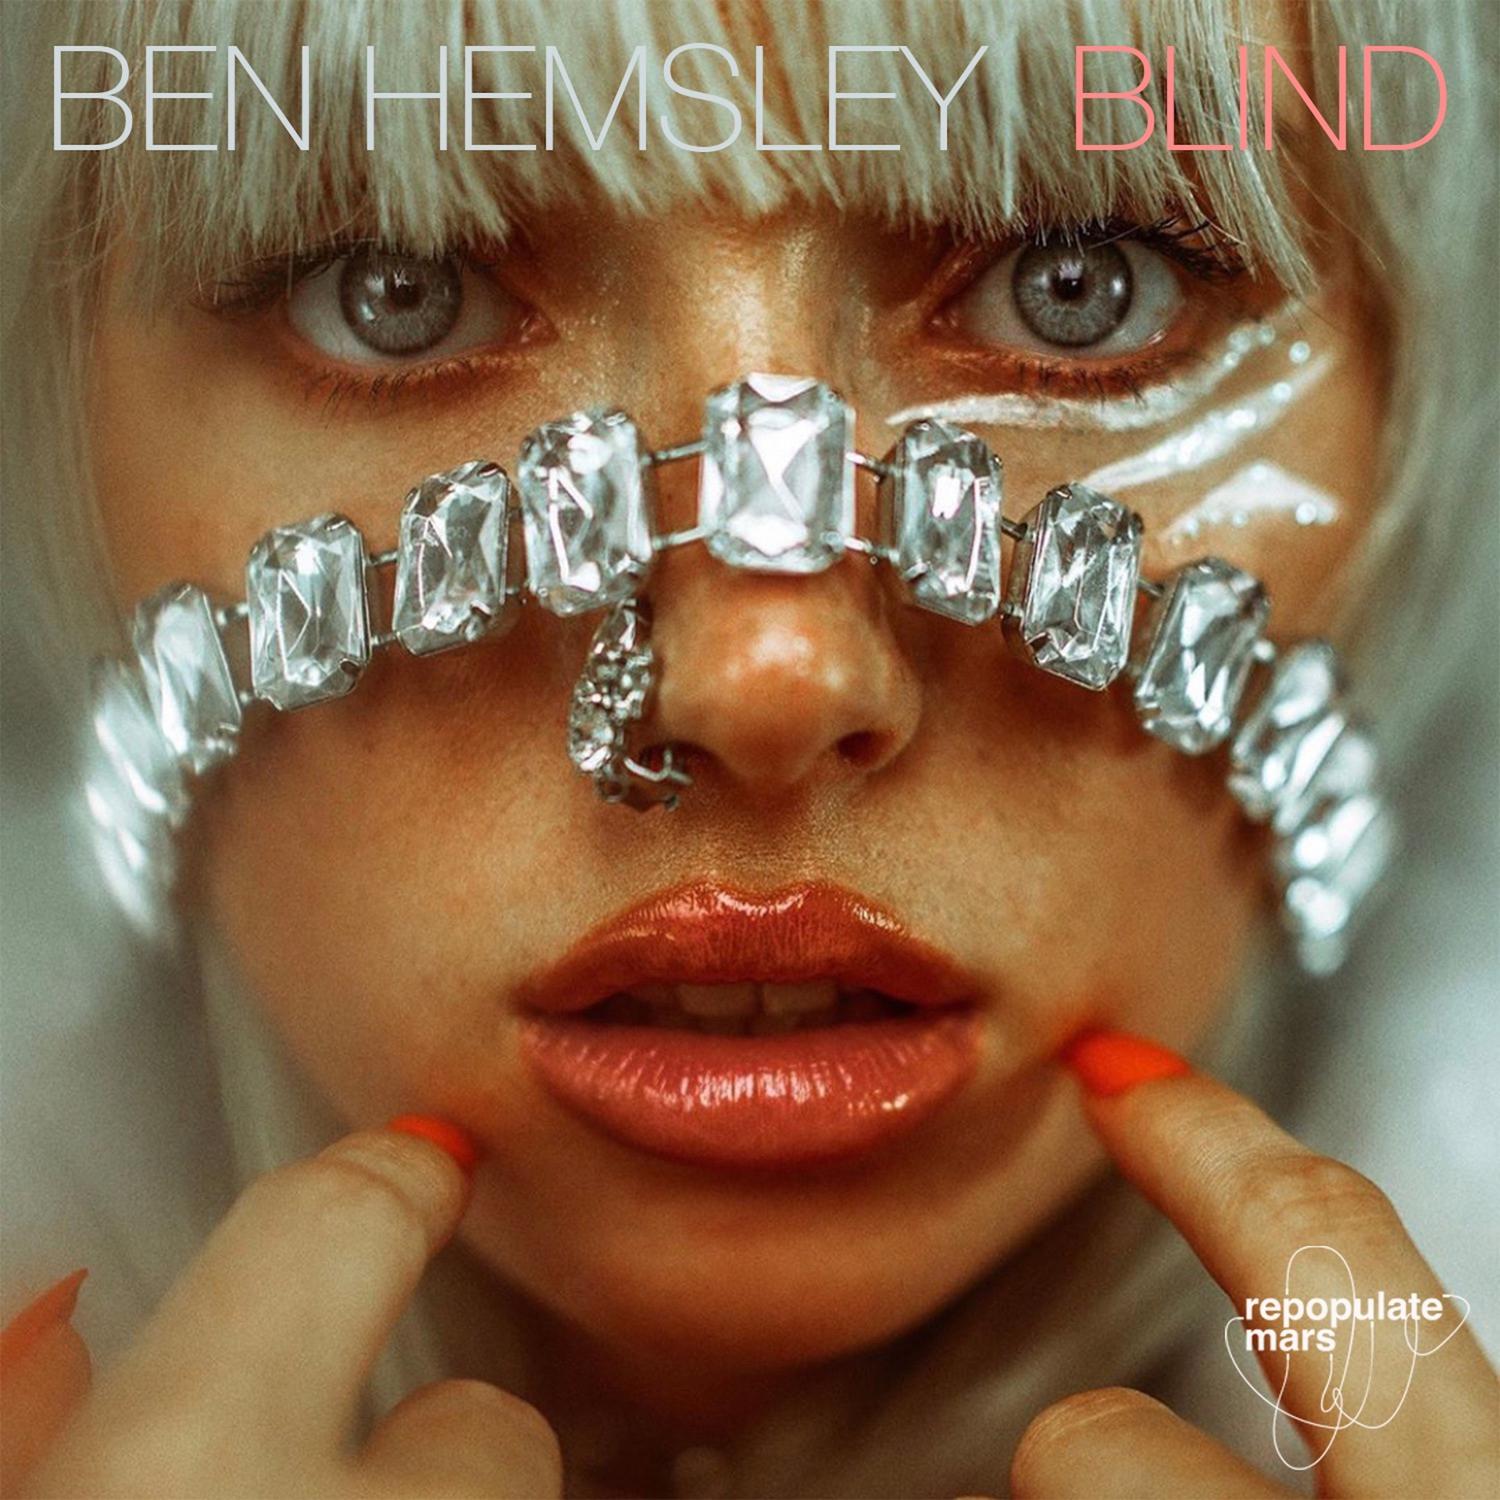 Ben Hemsley - Blind